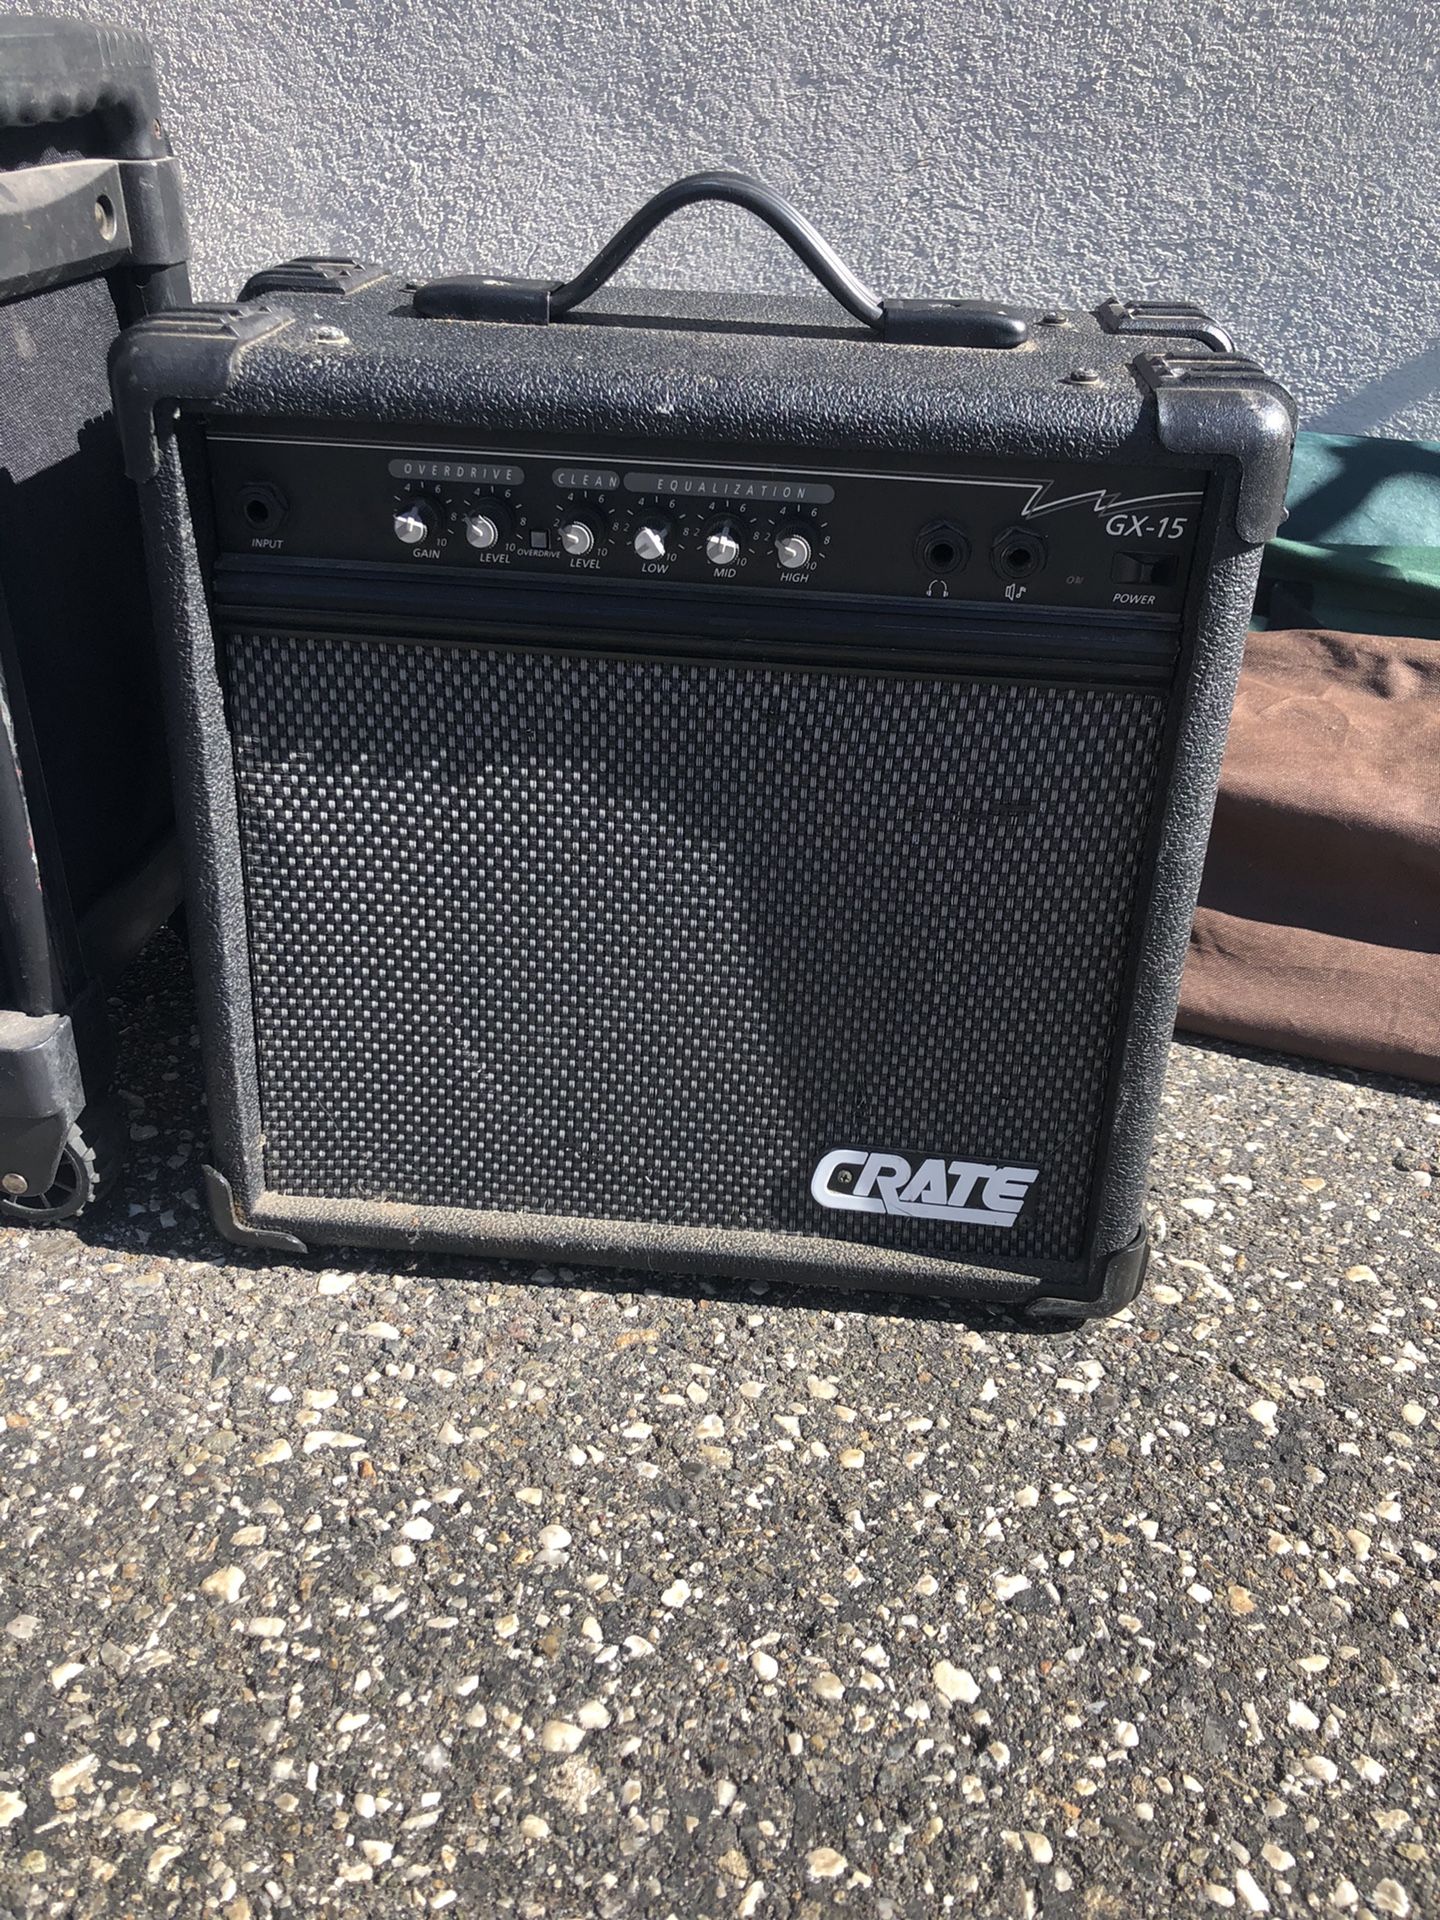 Crate amplifier